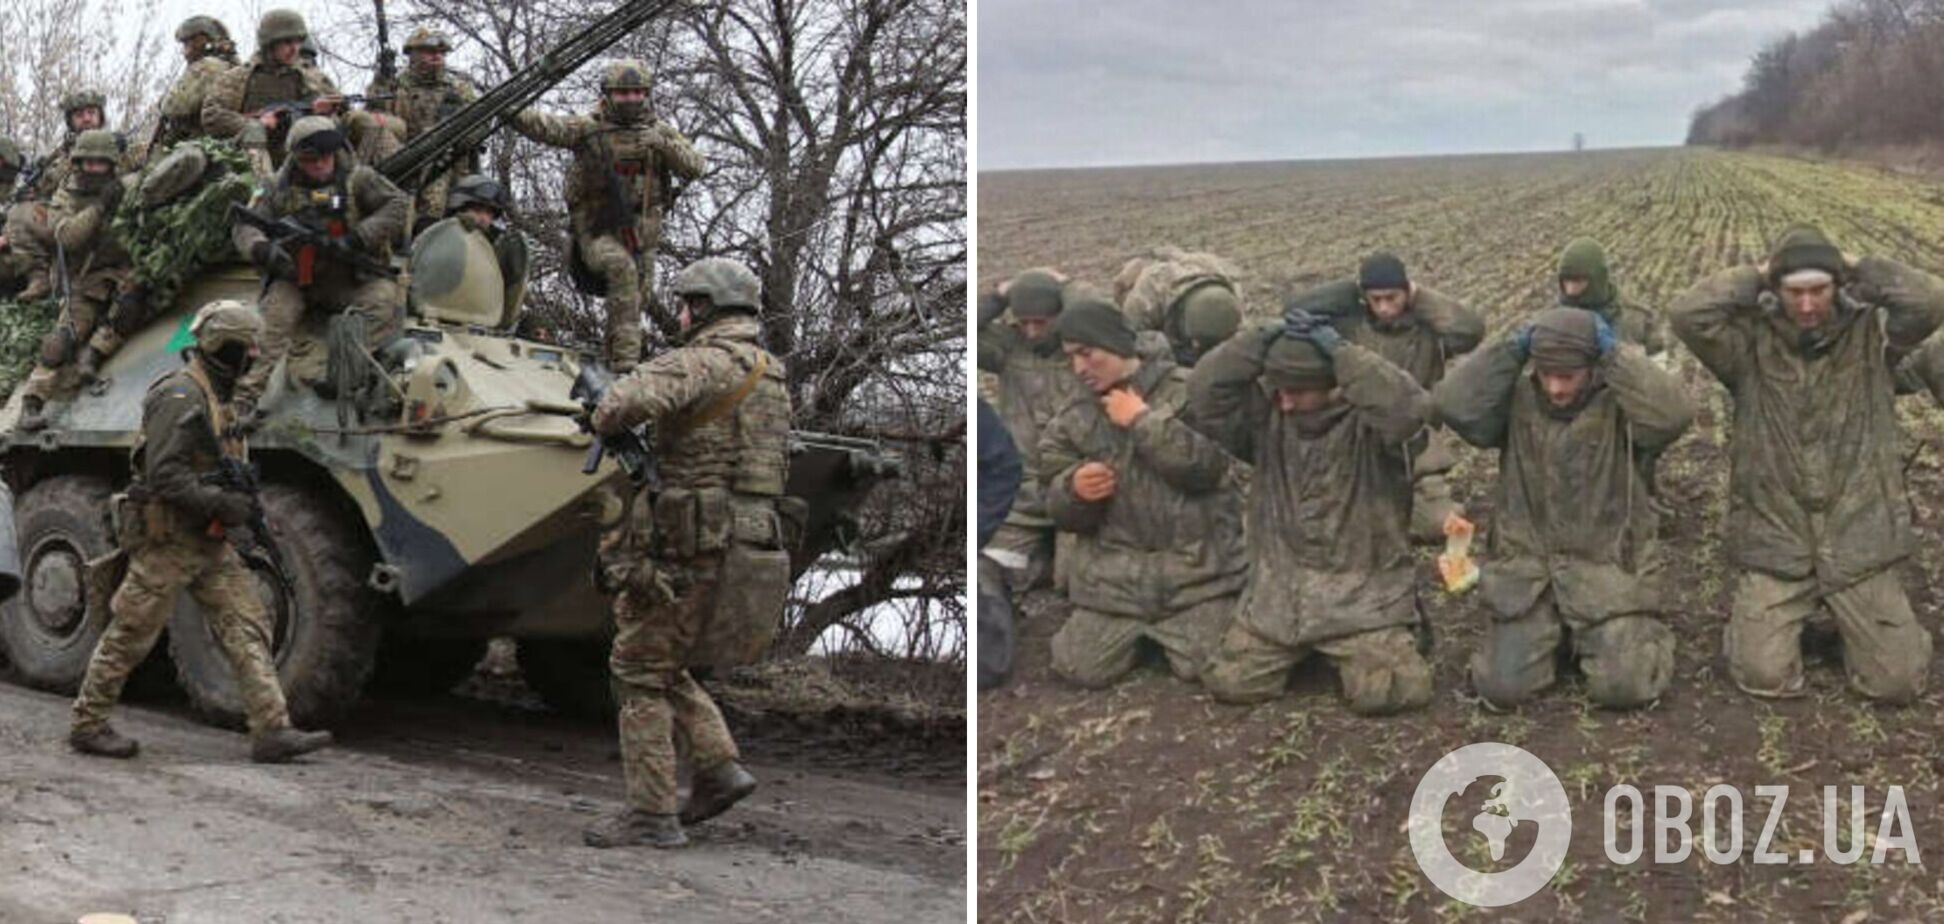 Российские оккупанты признались, сколько им платят за участие в войне против Украины. Видео